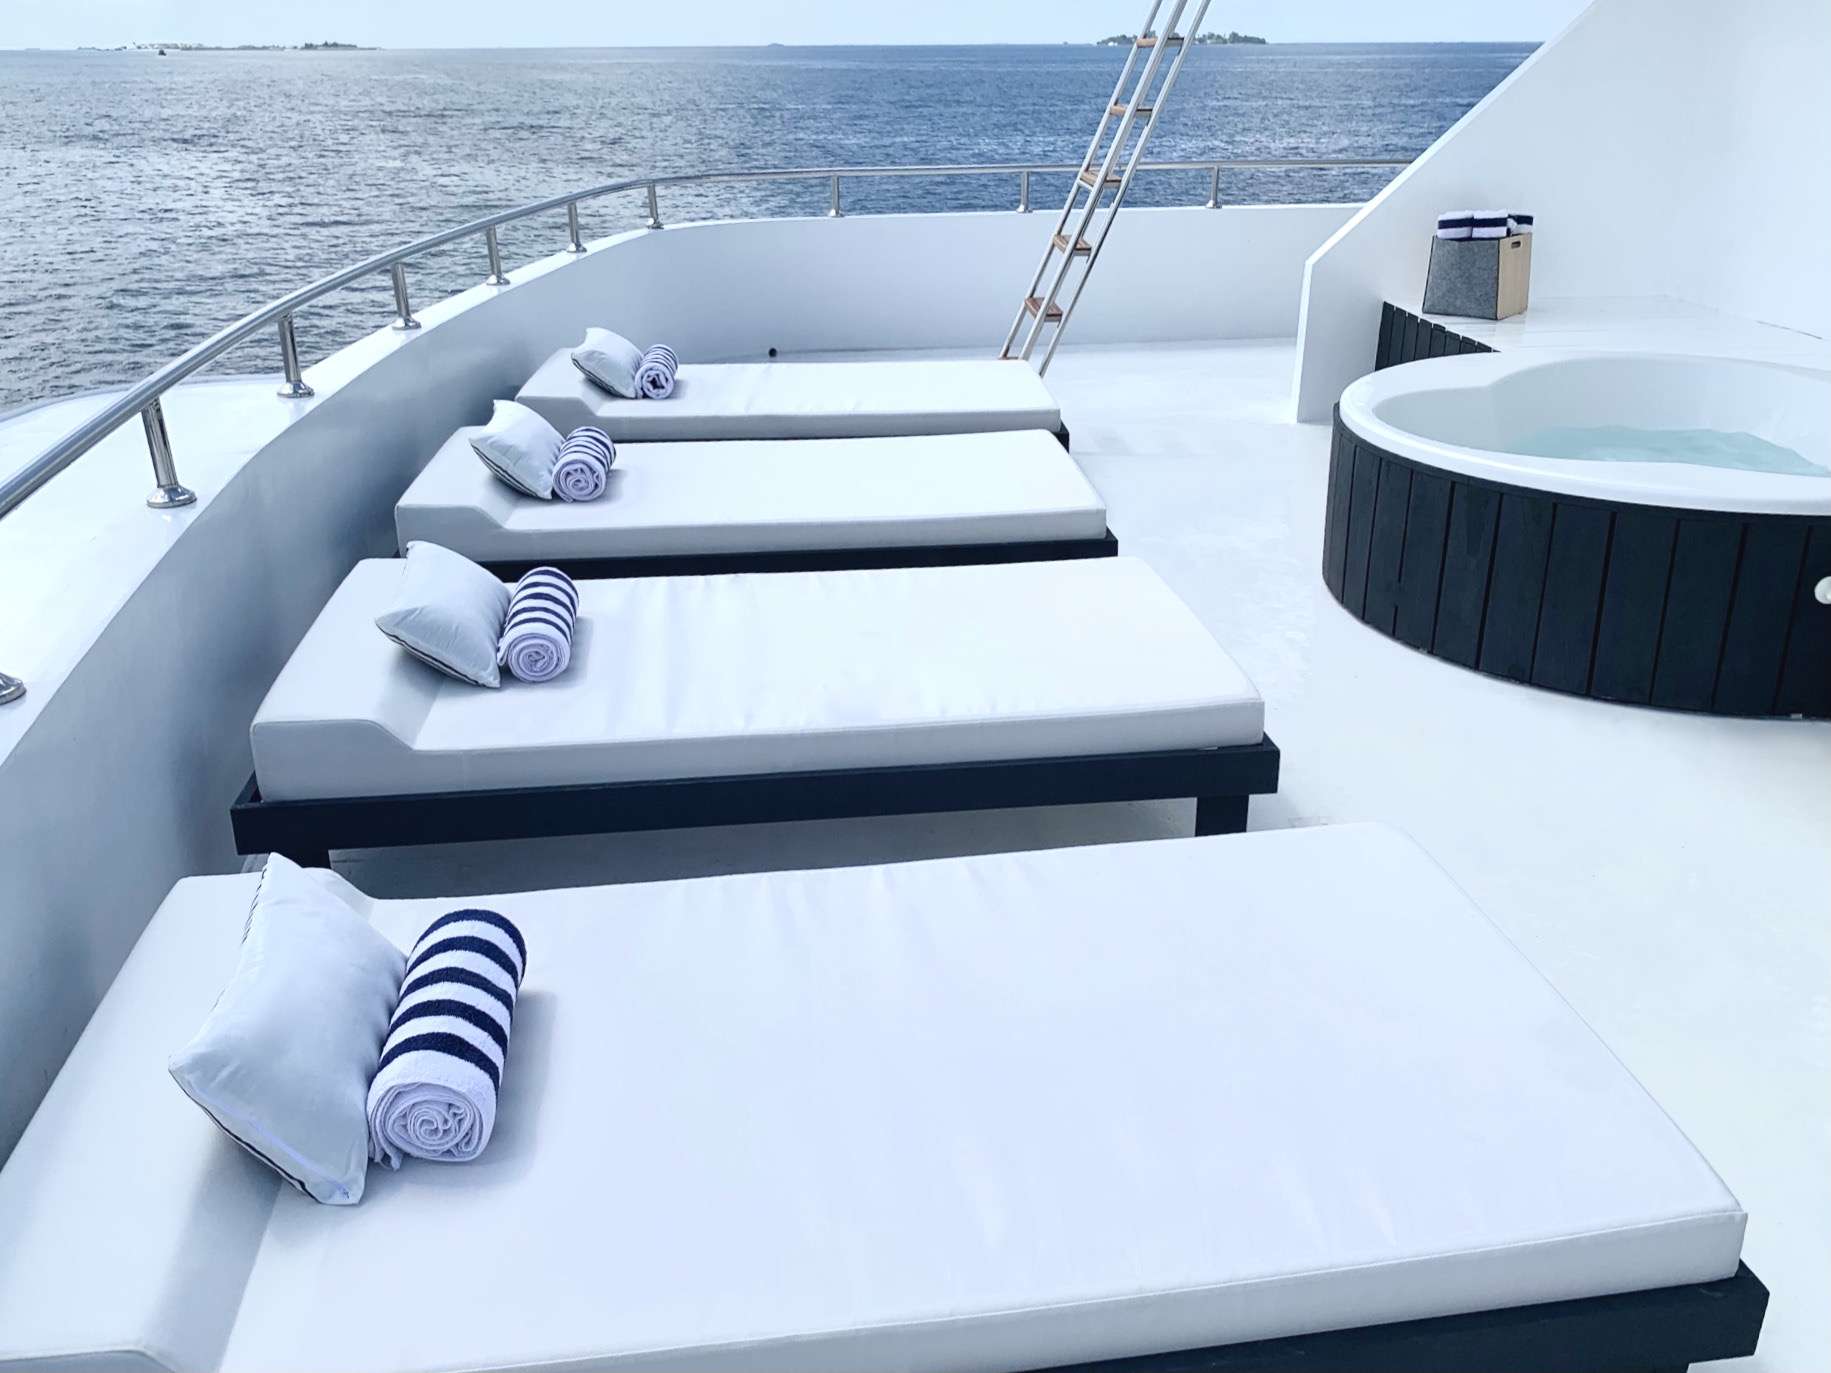 SAFIRA Yacht Charter - Sun Deck